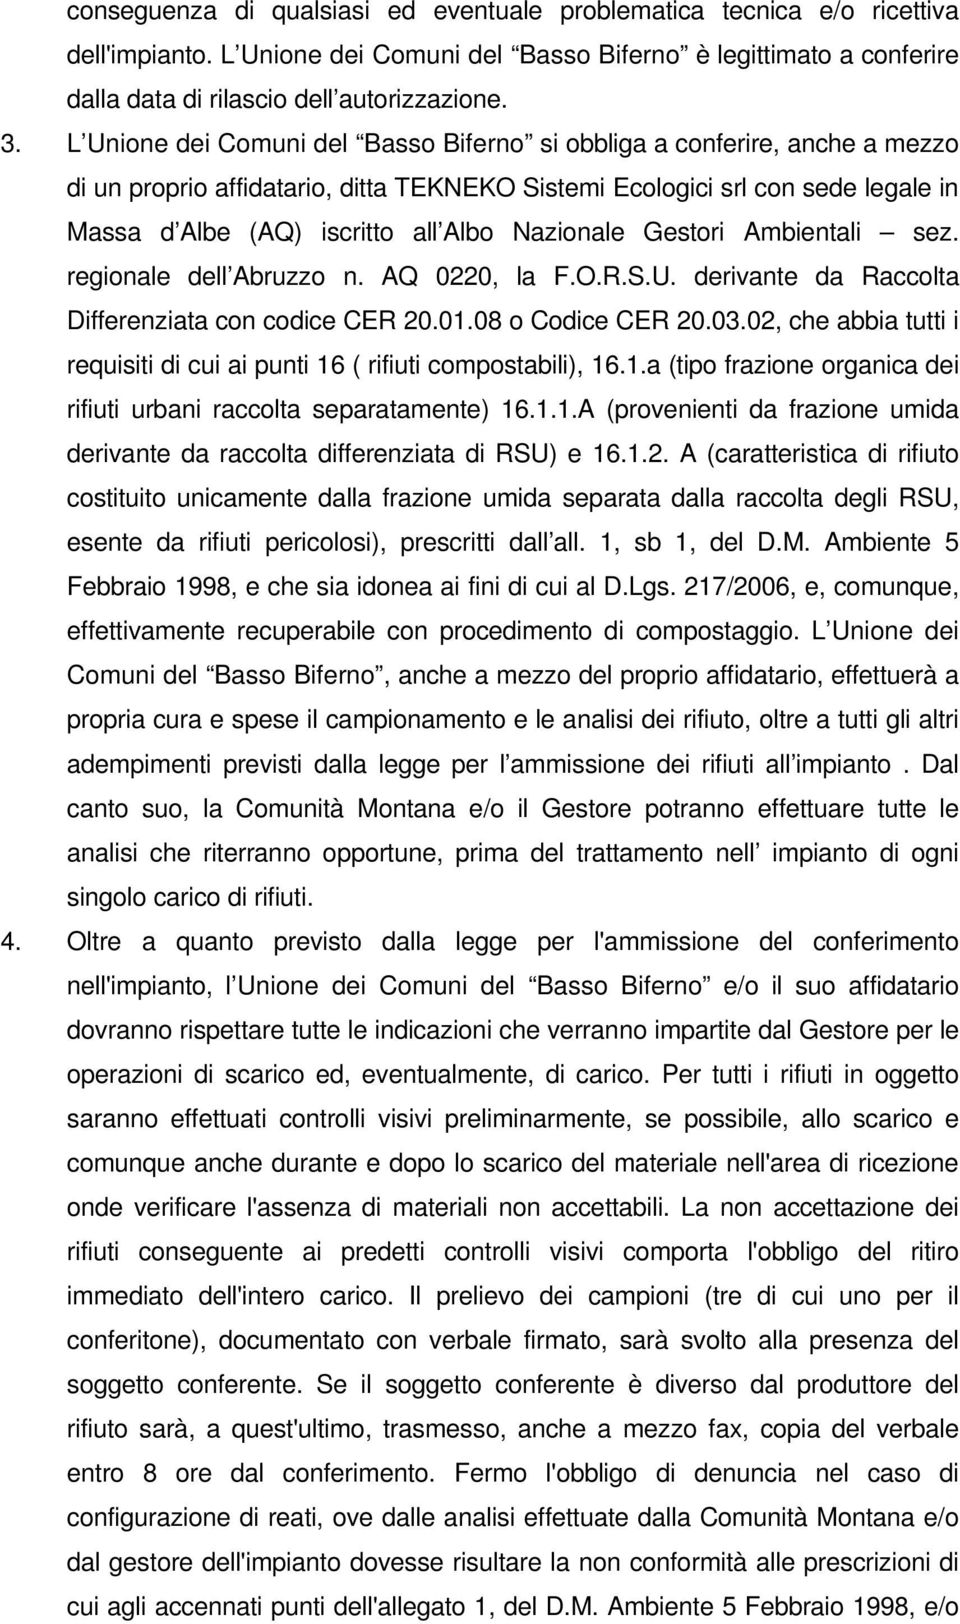 Nazionale Gestori Ambientali sez. regionale dell Abruzzo n. AQ 0220, la F.O.R.S.U. derivante da Raccolta Differenziata con codice CER 20.01.08 o Codice CER 20.03.